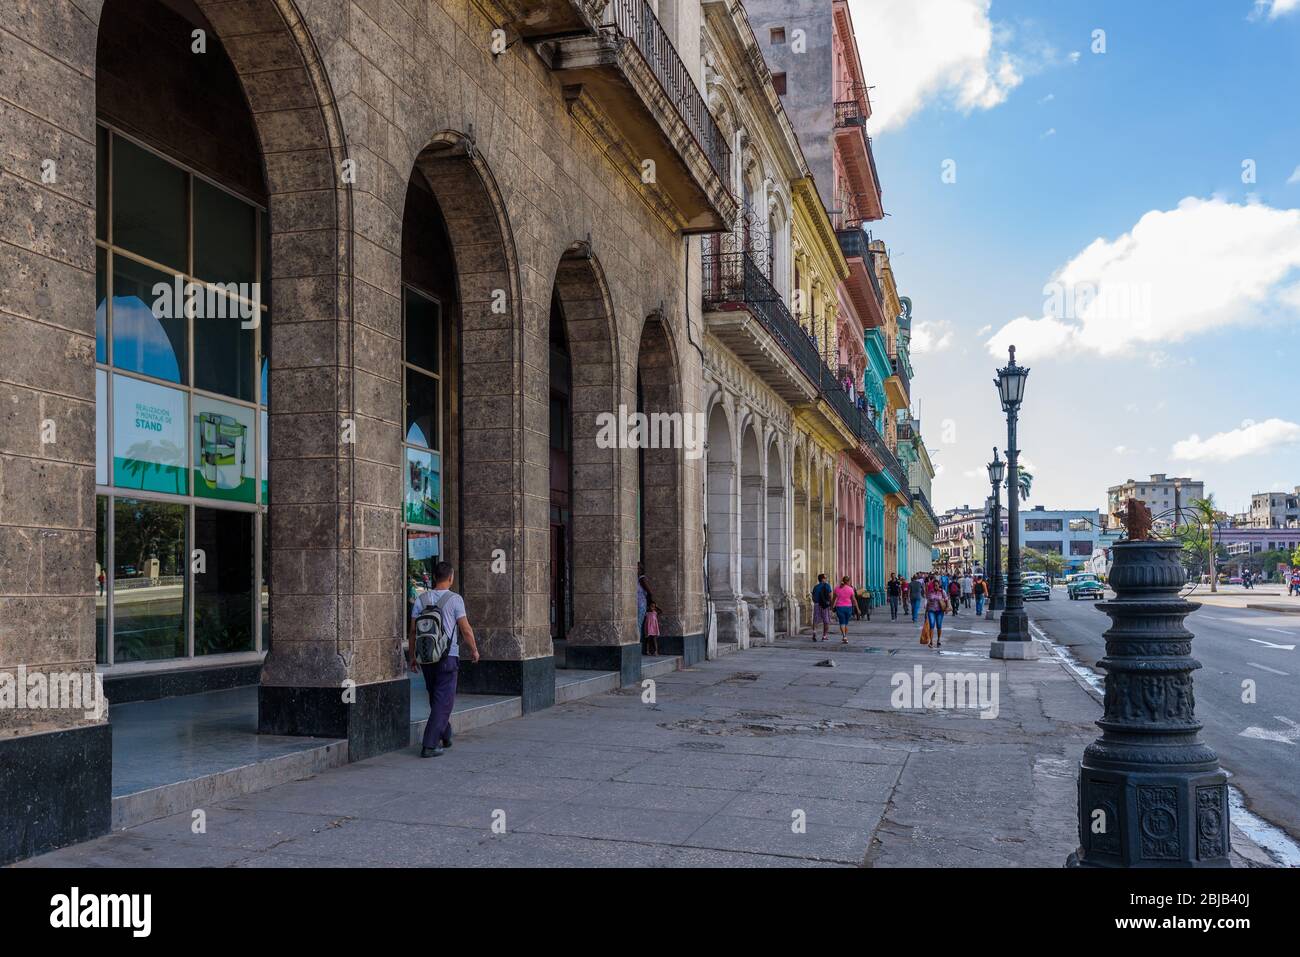 La vieille Havane, Cuba. Bâtiments classiques et colorés architecture de la Havane, Cuba. Banque D'Images